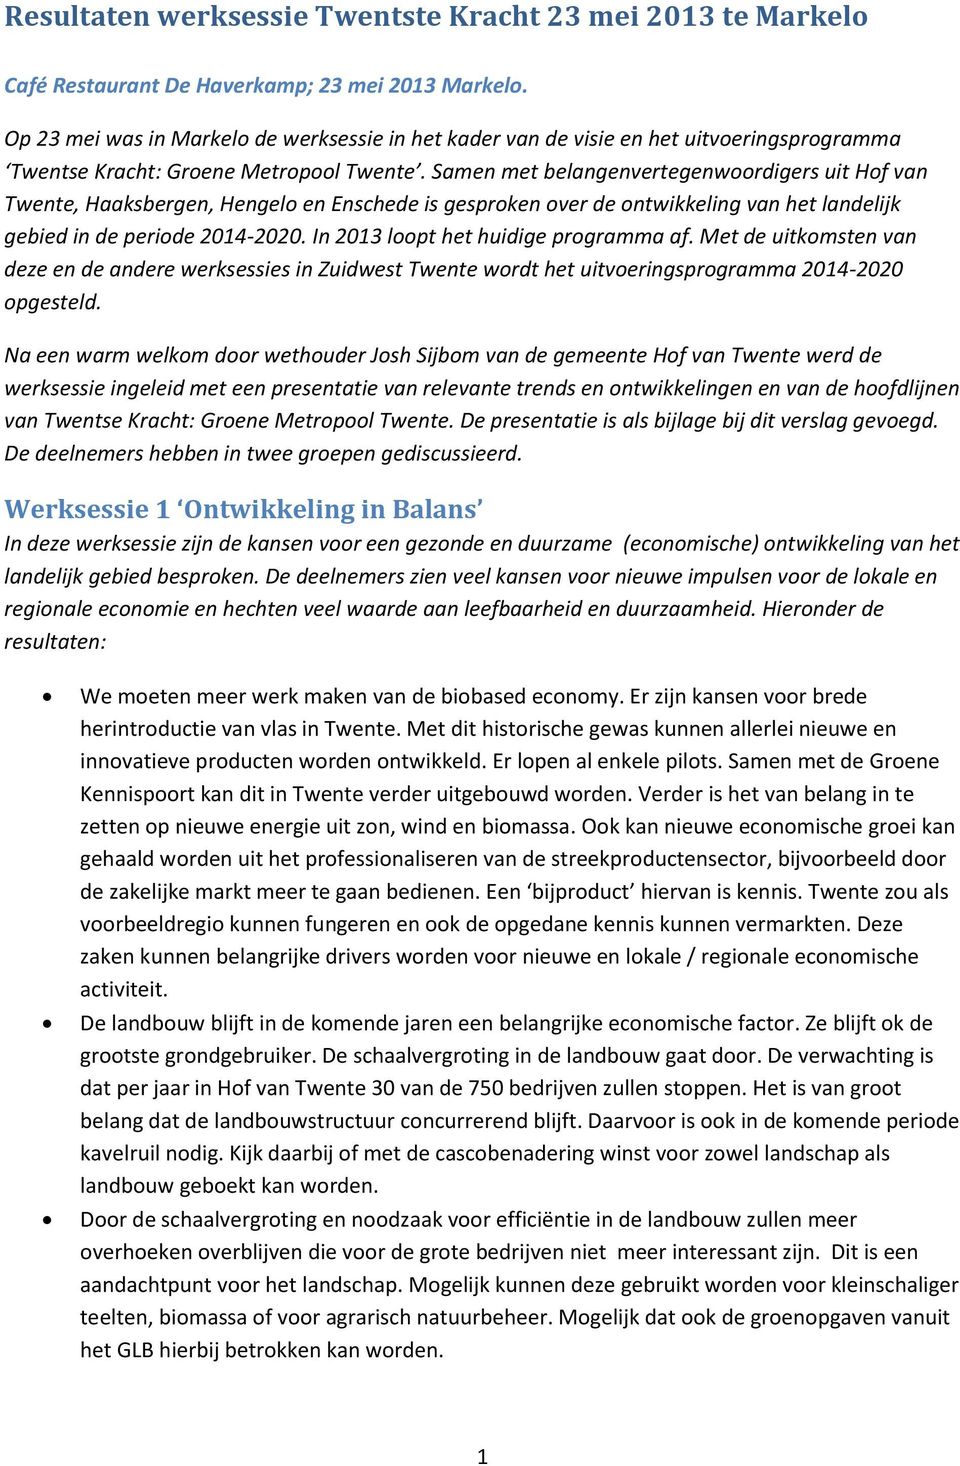 Samen met belangenvertegenwoordigers uit Hof van Twente, Haaksbergen, Hengelo en Enschede is gesproken over de ontwikkeling van het landelijk gebied in de periode 2014-2020.